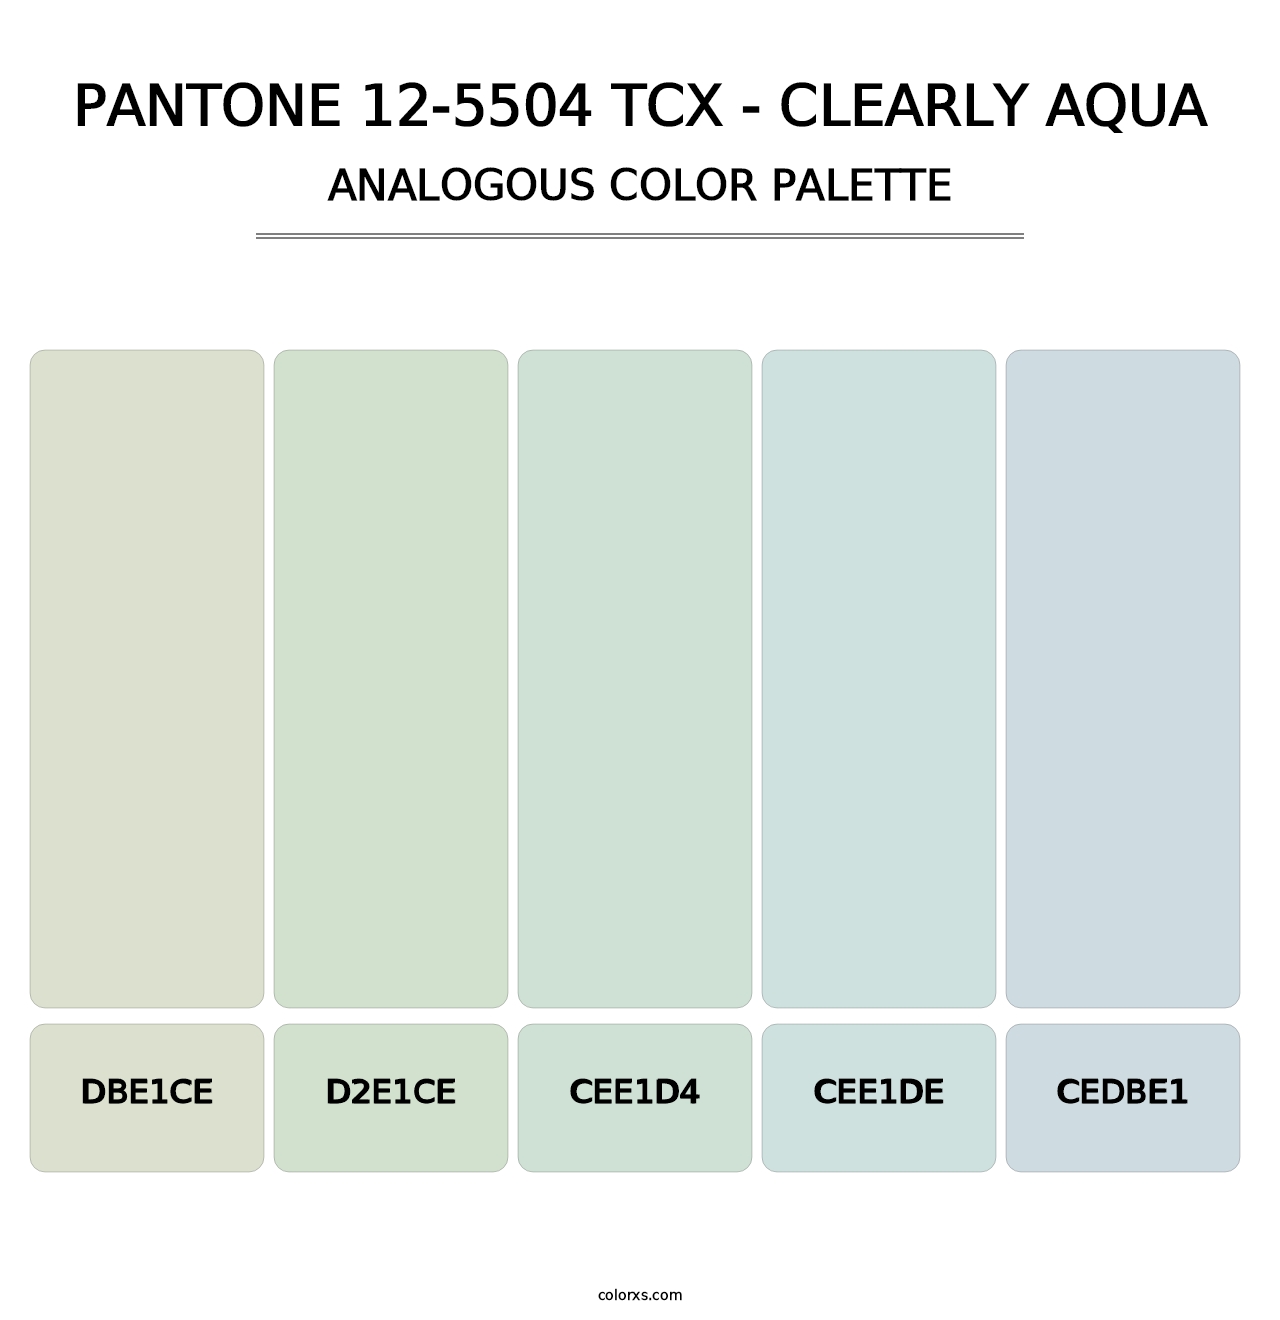 PANTONE 12-5504 TCX - Clearly Aqua - Analogous Color Palette